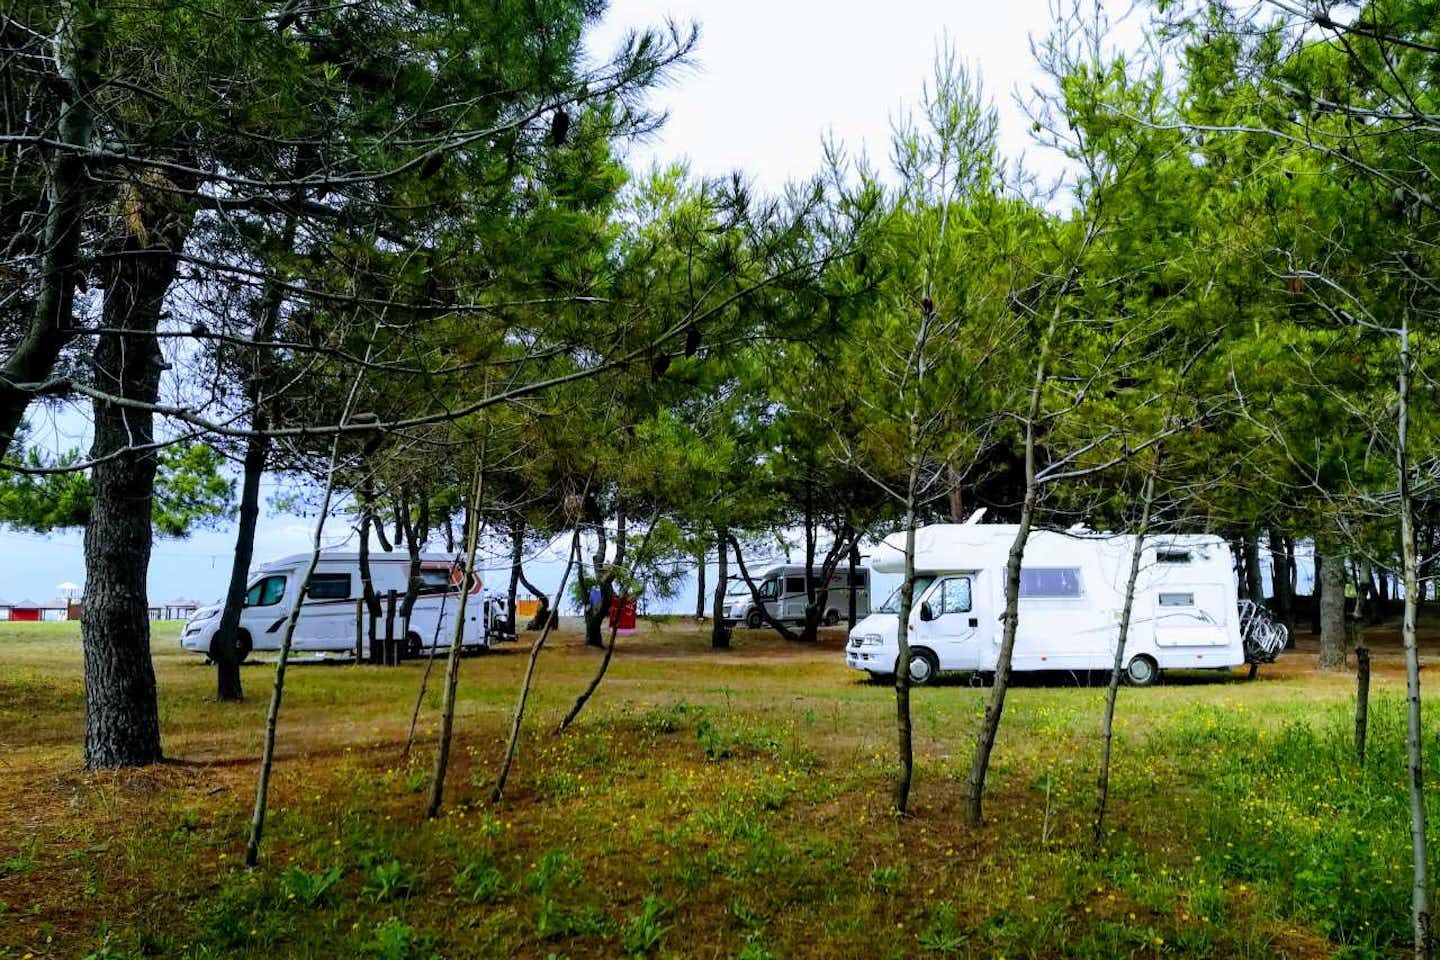 MCM Camping & Resort - Wohnwagenstellplätze auf dem Campingplatz zwischen Bäumen mit Blick auf das Mittelmeer